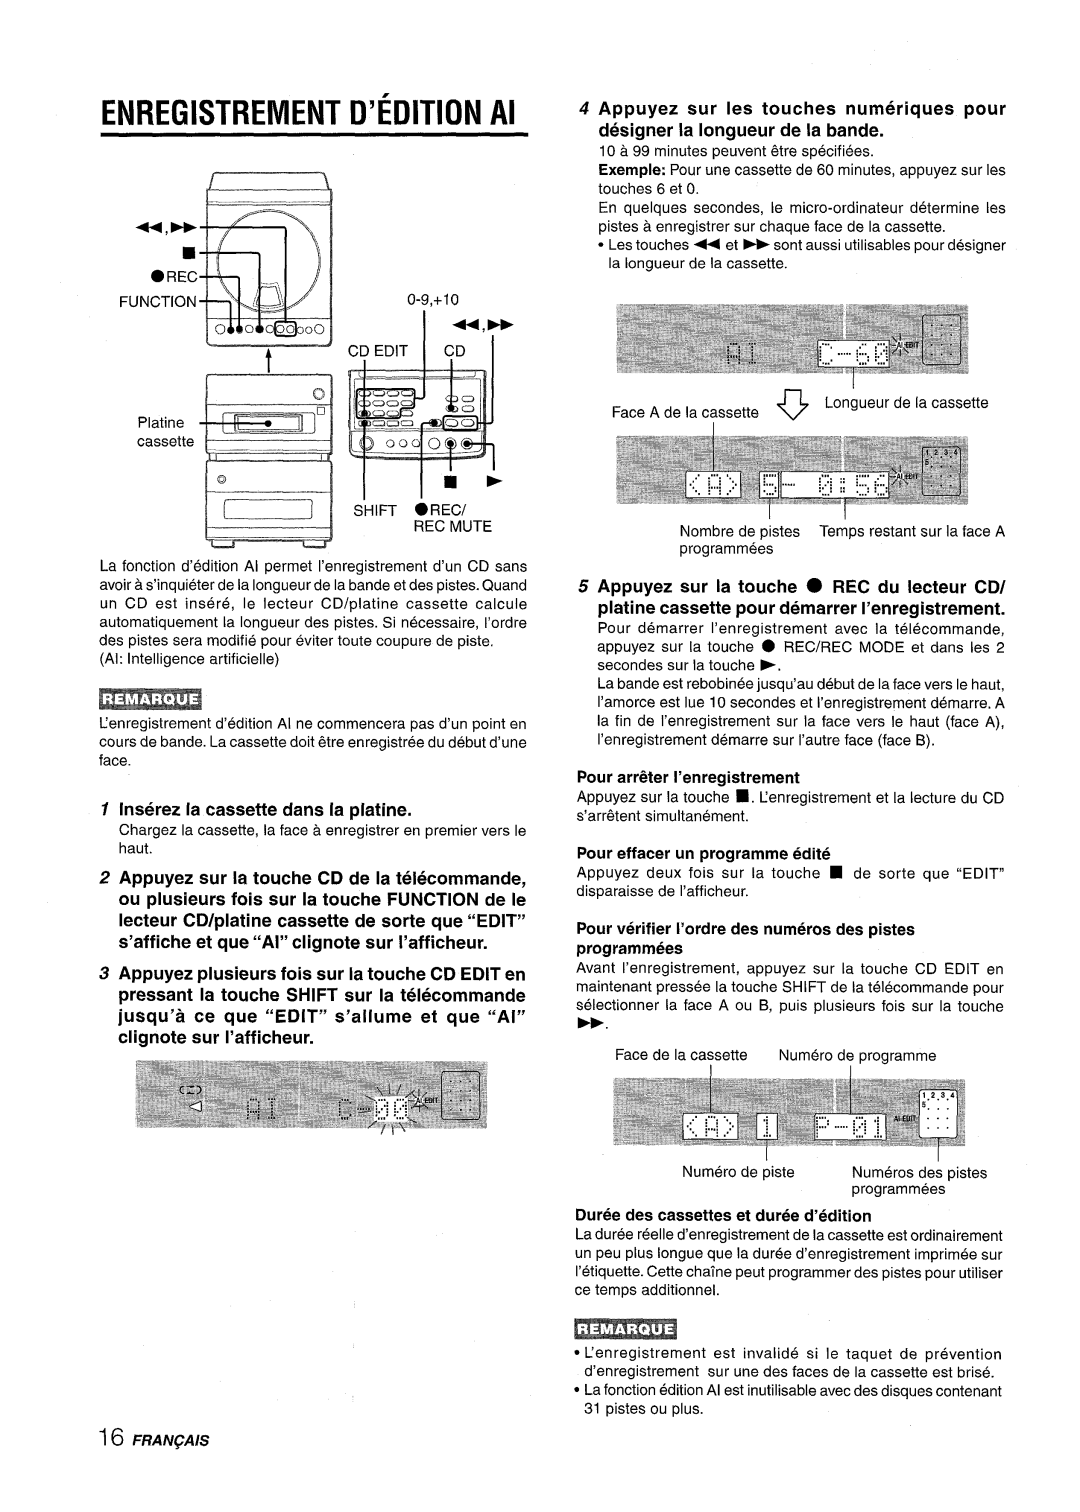 Aiwa XR-M88 manual ENREGISTREMENT D’EDITION Al, Platine I ‘ ““”””””‘%-0, Inserez la cassette clans la platine 